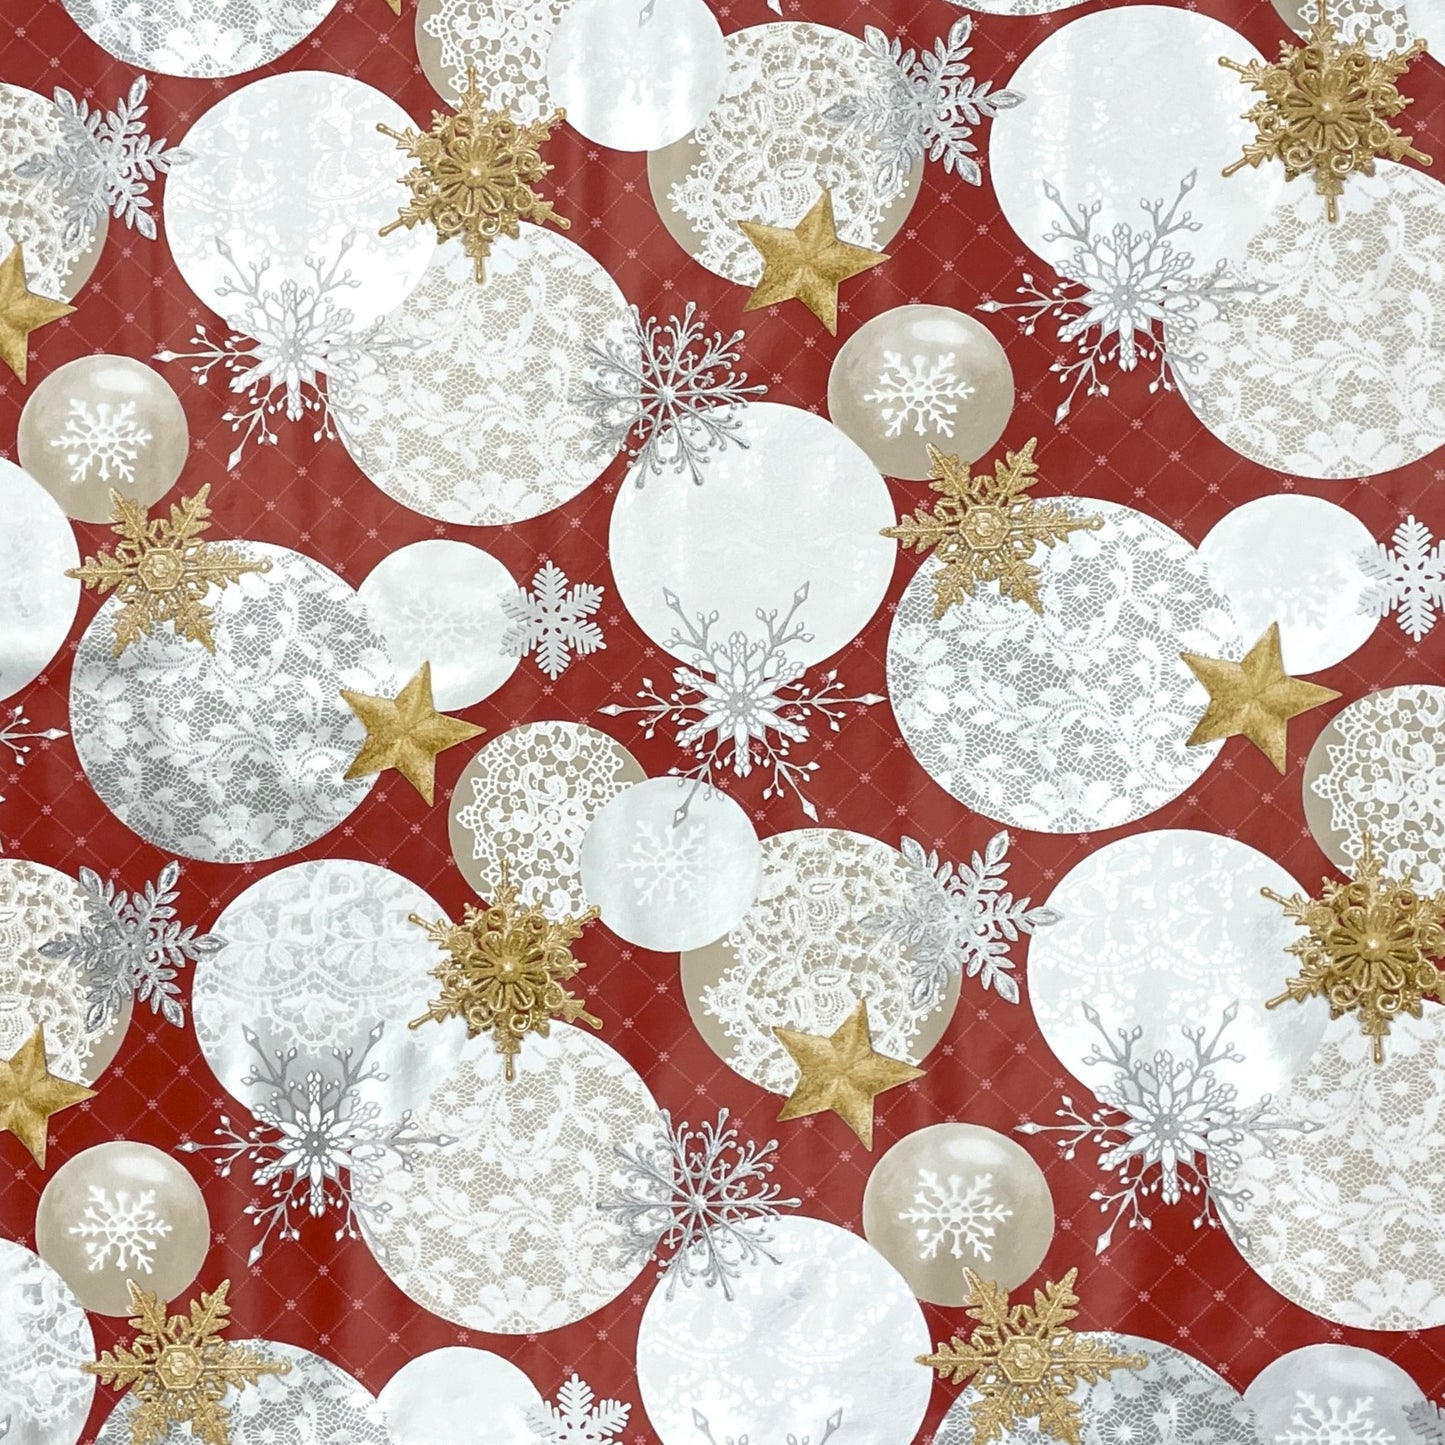 KEVKUS Wachstuch Tischdecke B7000-03 goldene Sterne rot Weihnachten Advent wählbar in eckig, rund und oval -